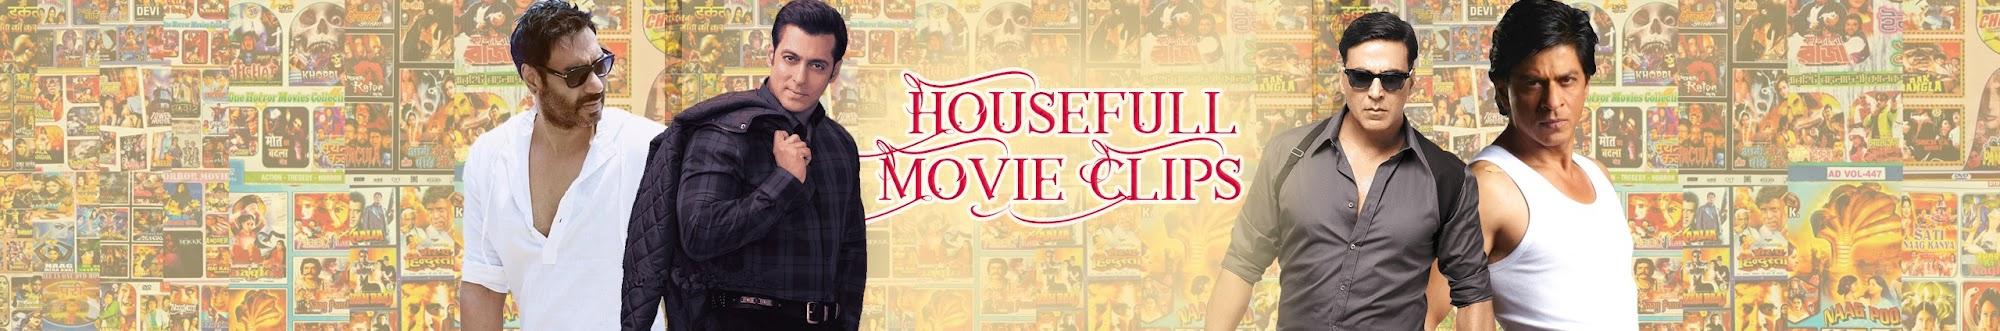 Housefull Movie Clips